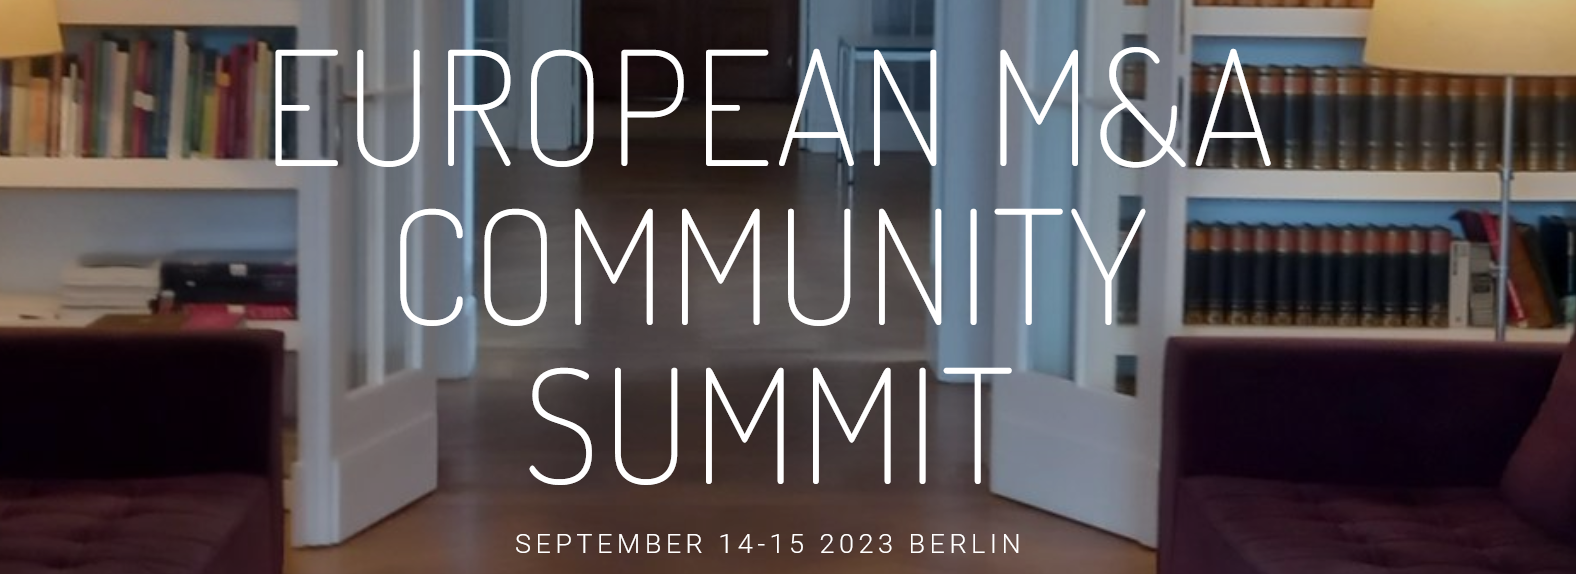 European M&A Community Summit